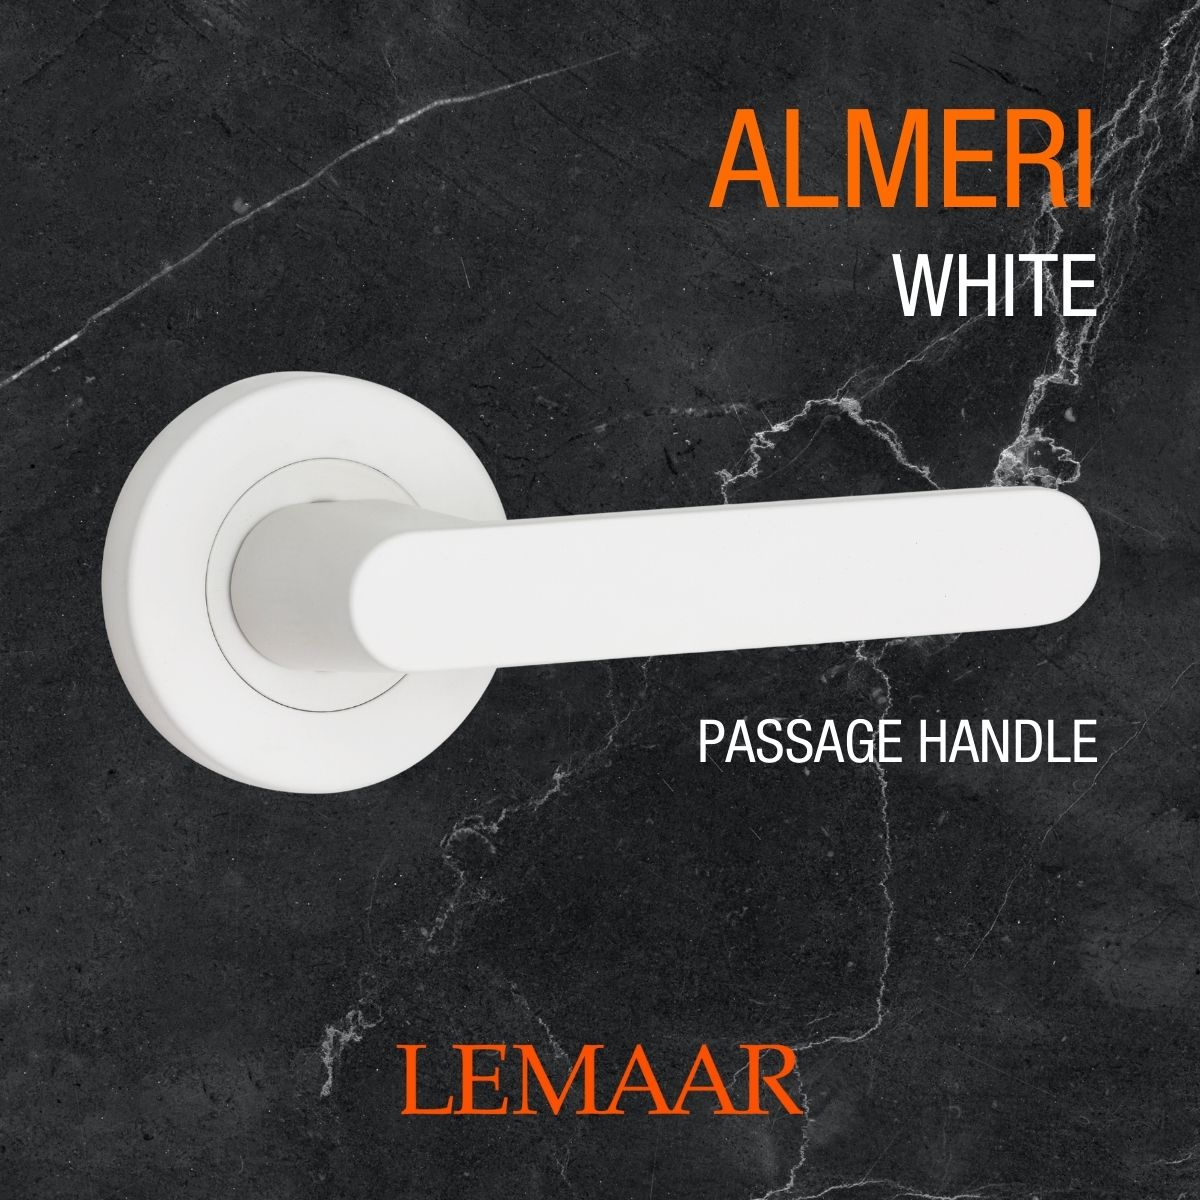 almeri white door handle lemaar